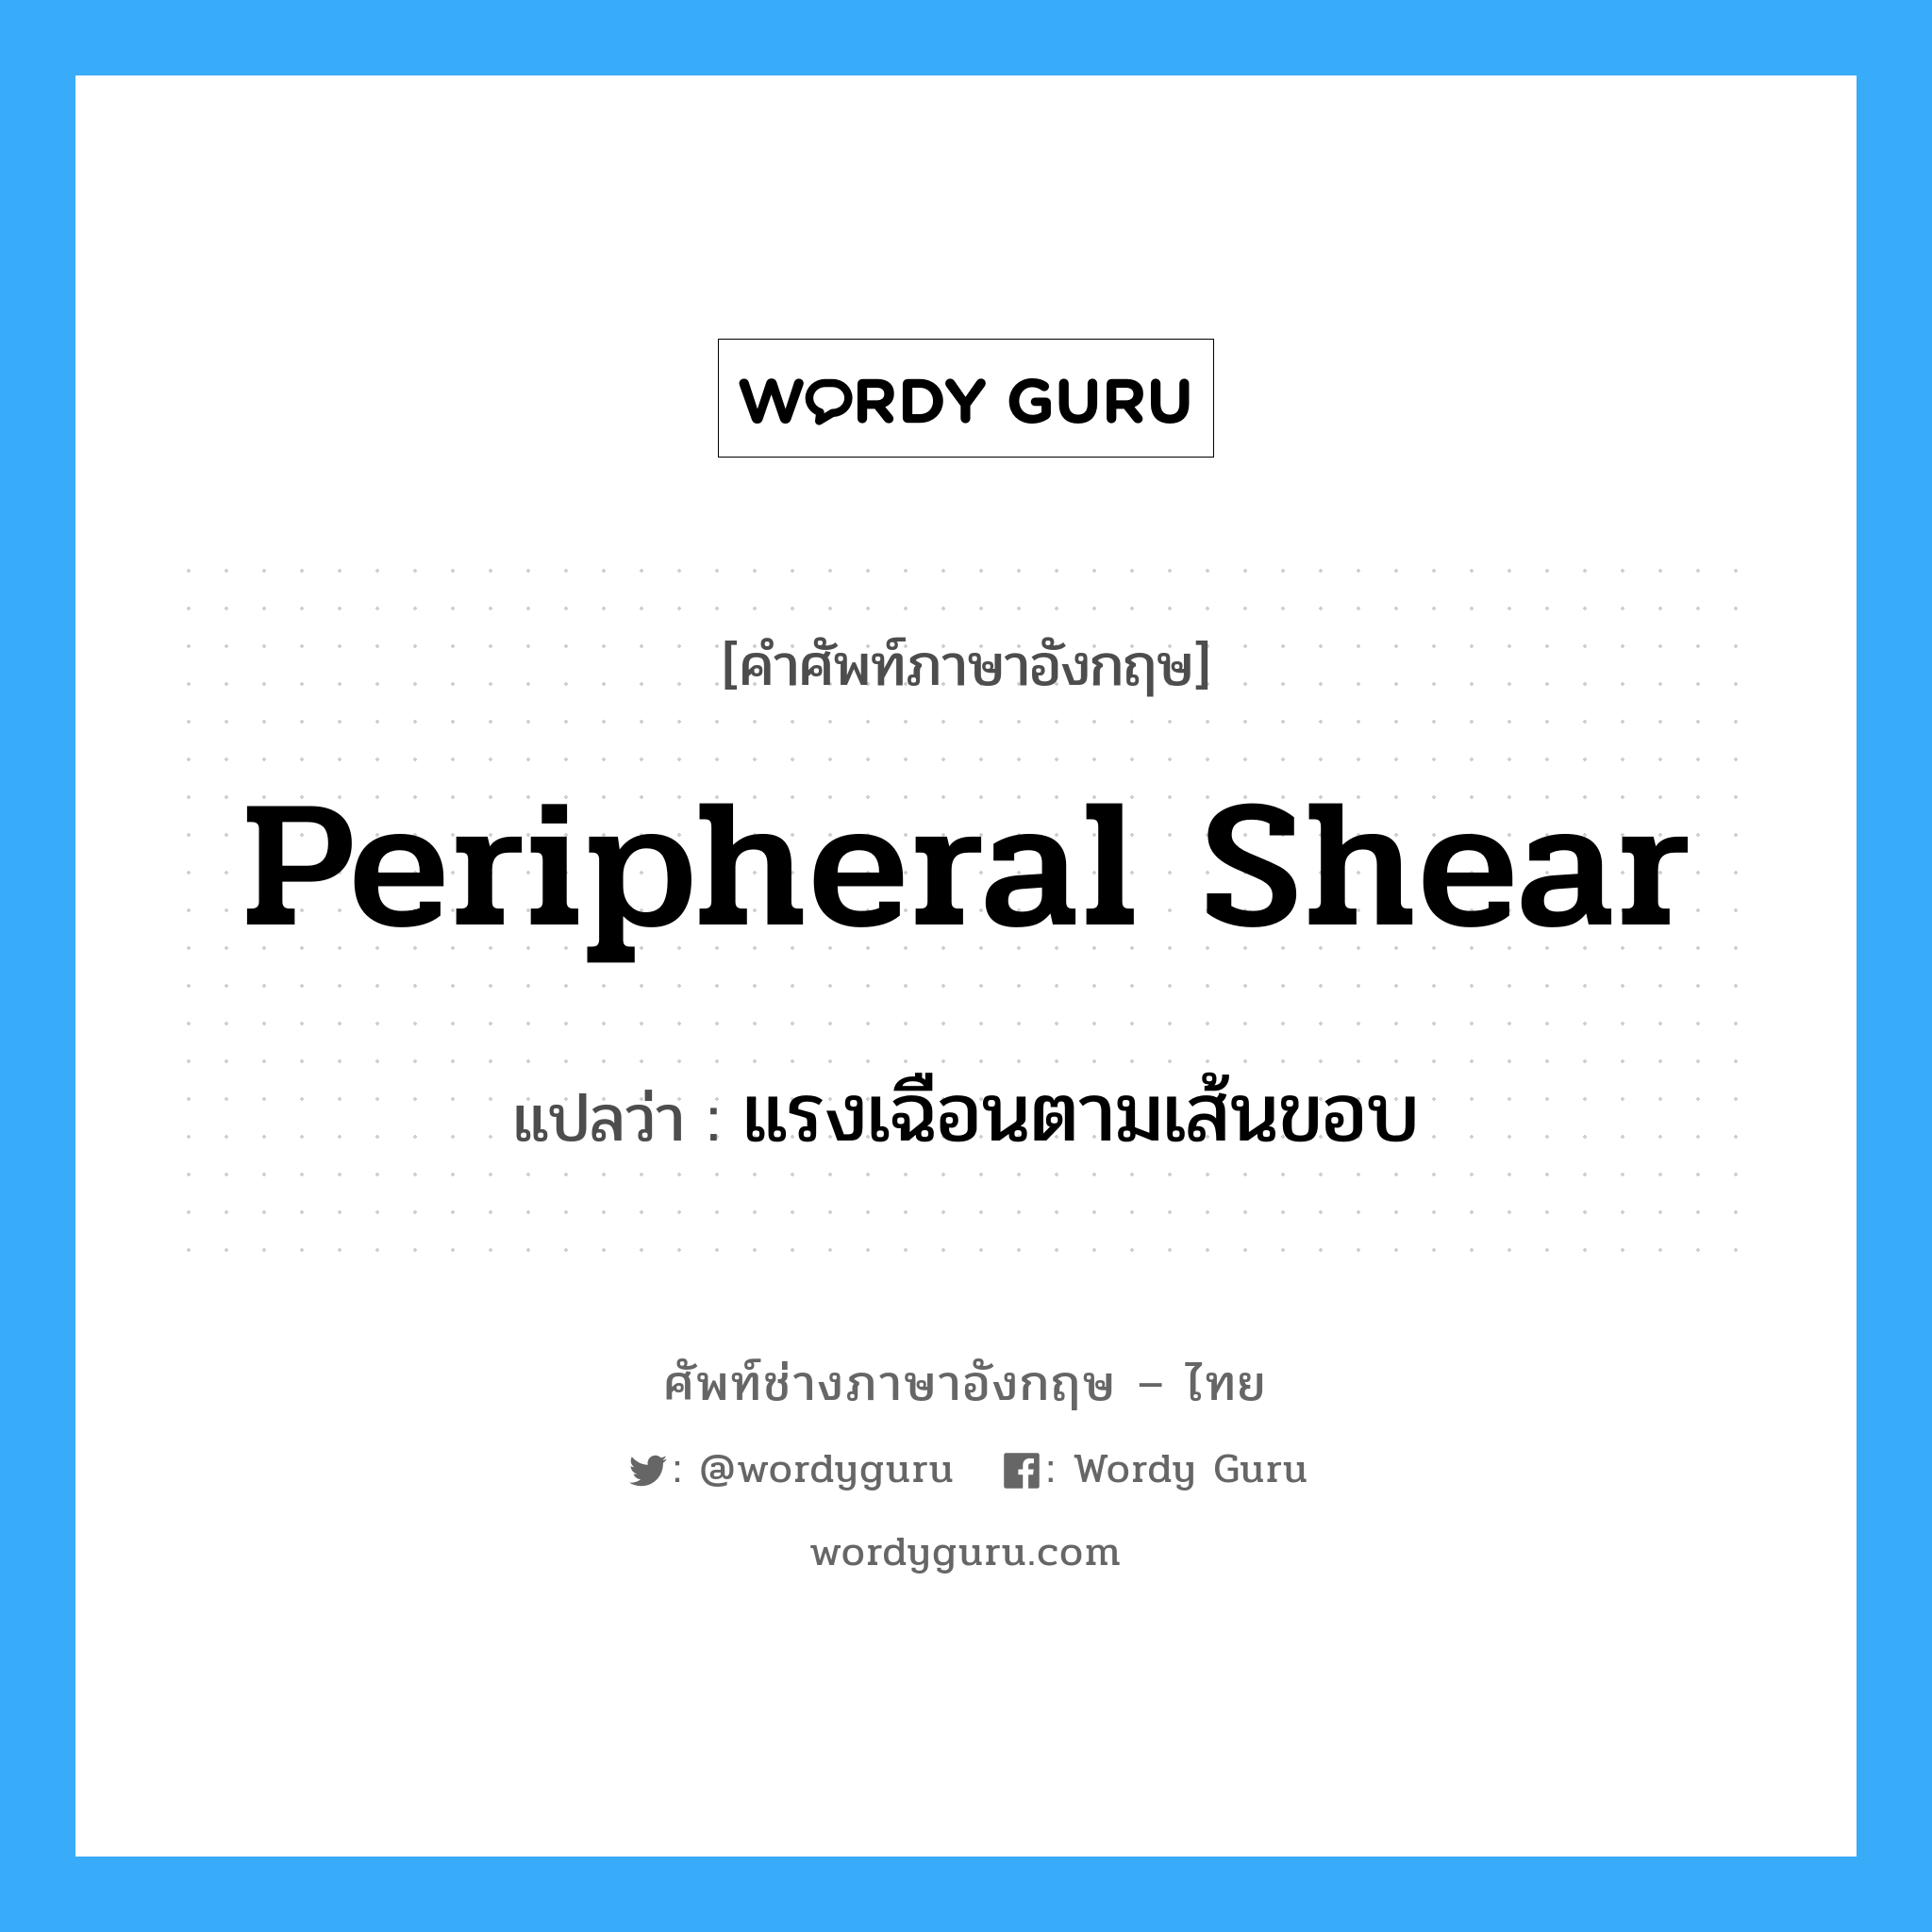 แรงเฉือนตามเส้นขอบ ภาษาอังกฤษ?, คำศัพท์ช่างภาษาอังกฤษ - ไทย แรงเฉือนตามเส้นขอบ คำศัพท์ภาษาอังกฤษ แรงเฉือนตามเส้นขอบ แปลว่า peripheral shear